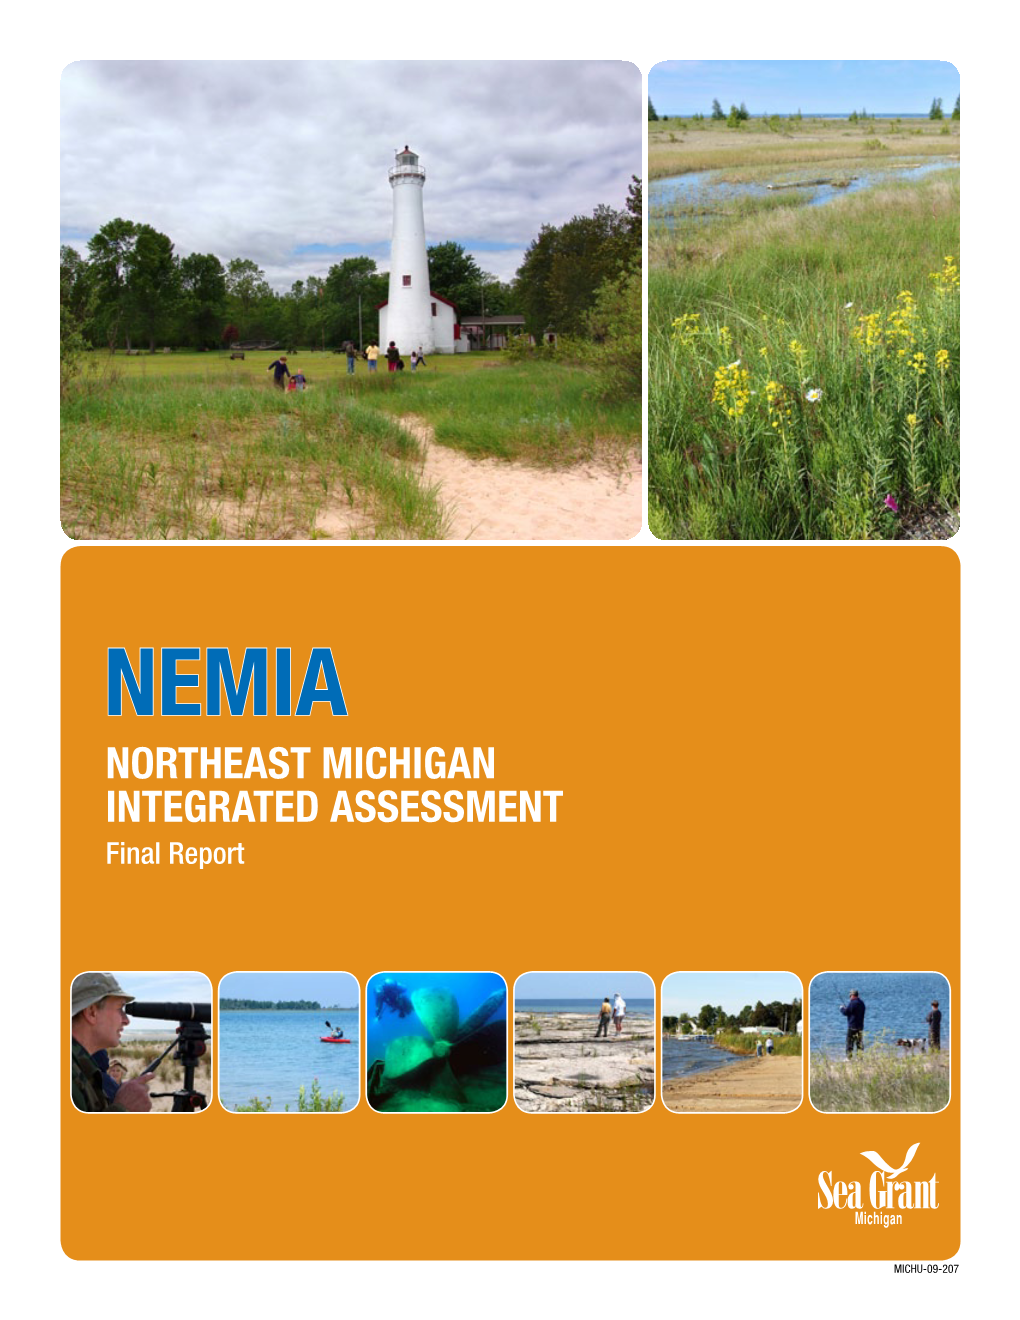 Northeast Michigan Integrated Assessment Final Report